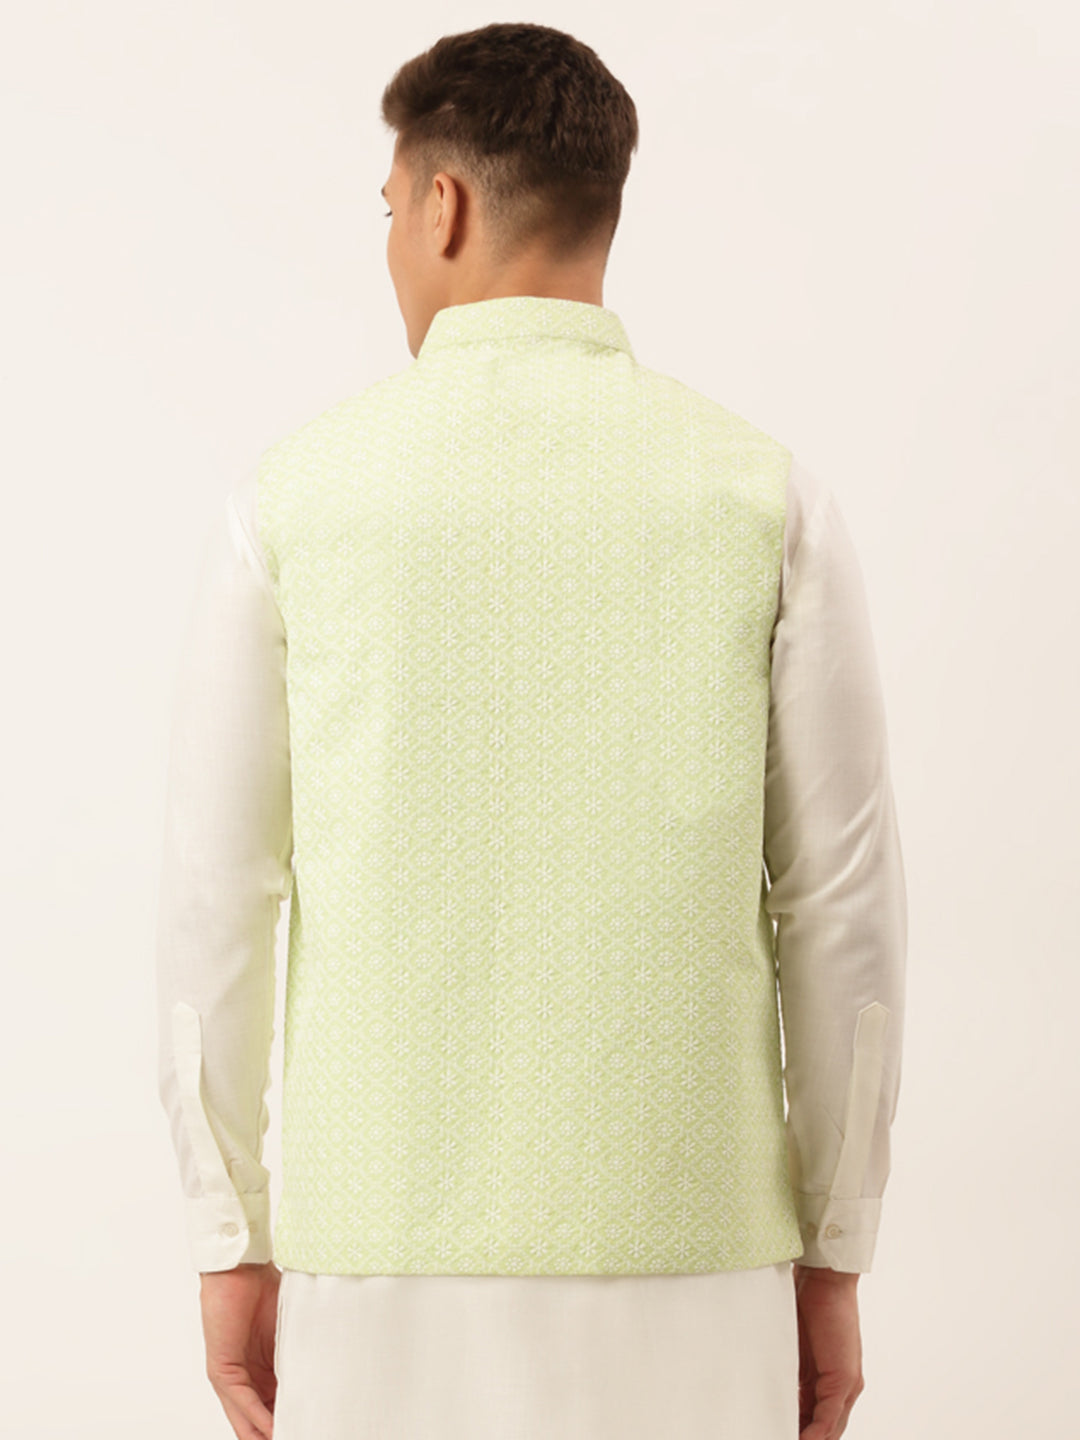 Men's Green Embroidered Nehru Jackets